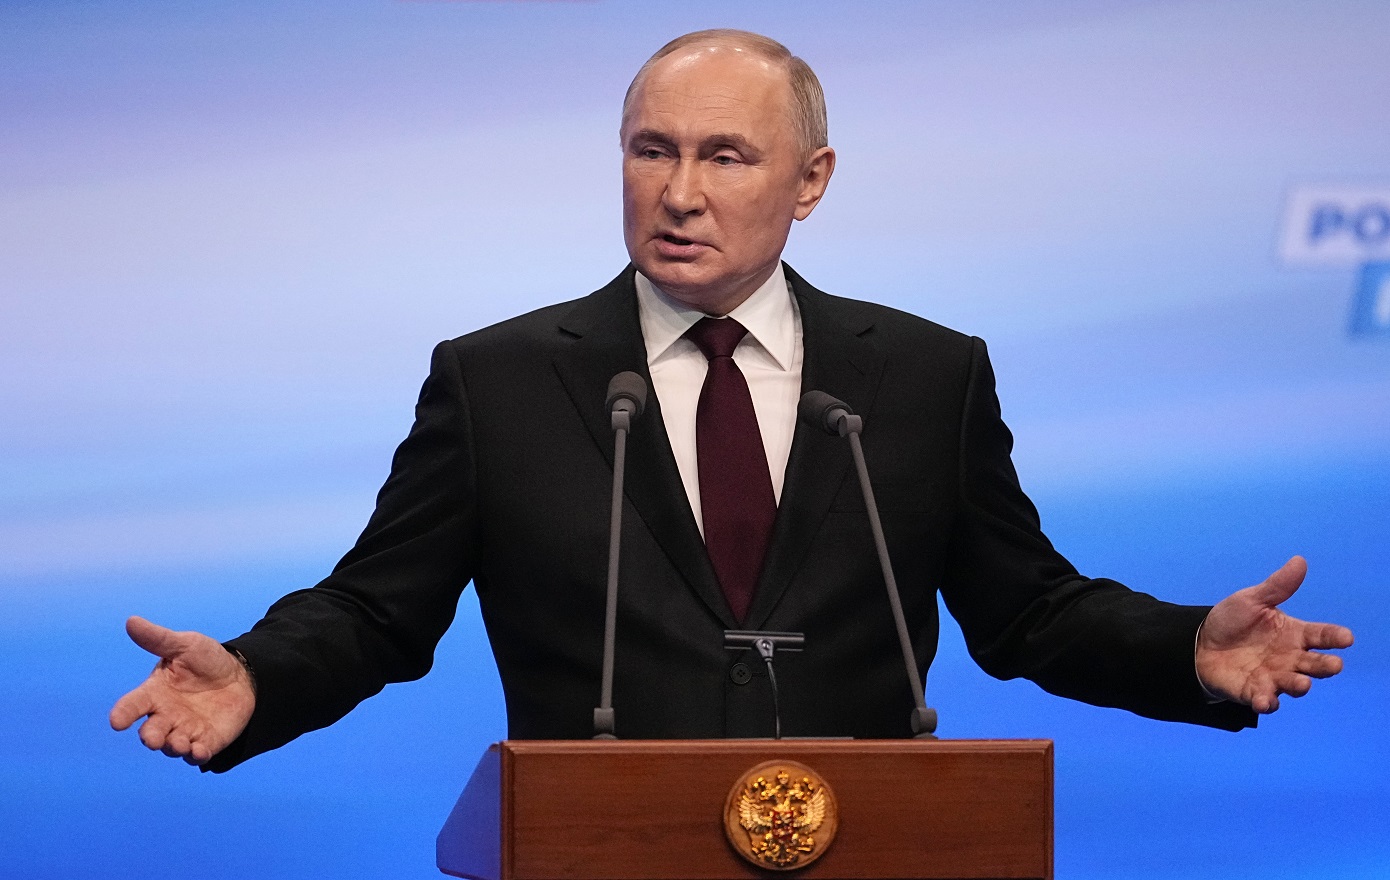 Διάταγμα υπέγραψε ο Πούτιν για νέα κατάταξη κληρωτών στις ένοπλες δυνάμεις